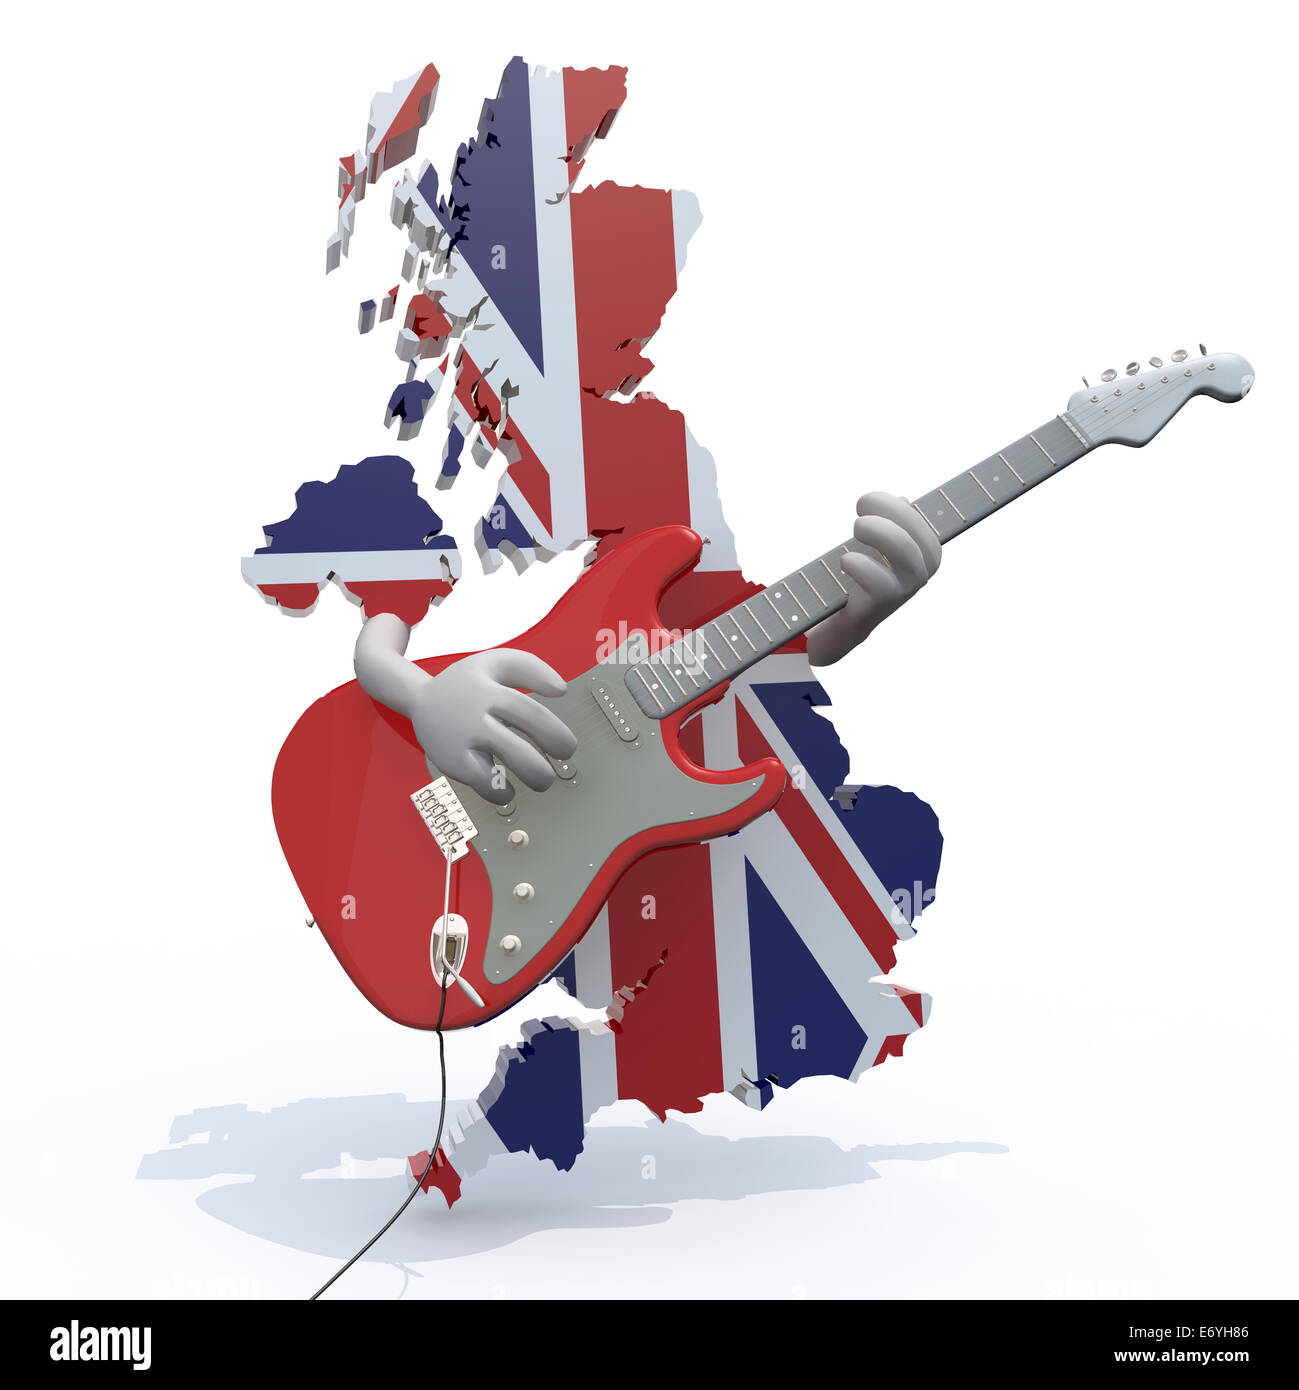 England-Karte mit Armen, die e-Gitarre, 3D-Illustration spielen Stockfoto